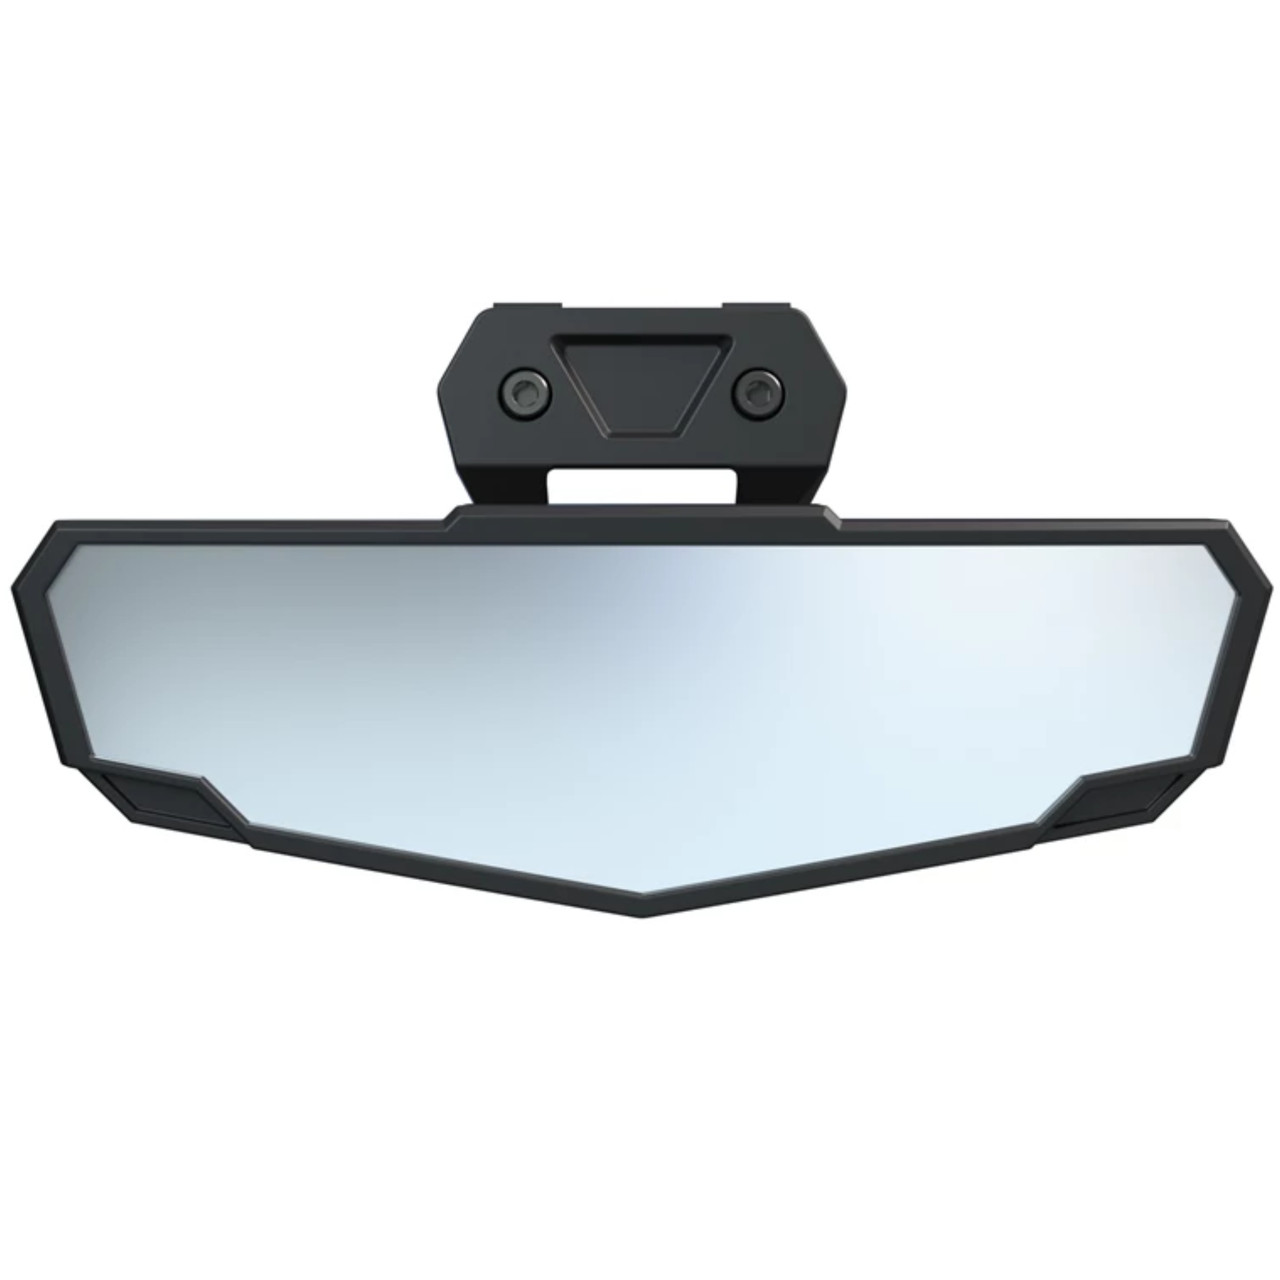 Polaris New OEM Premium Convex Rearview Mirror, 2883763